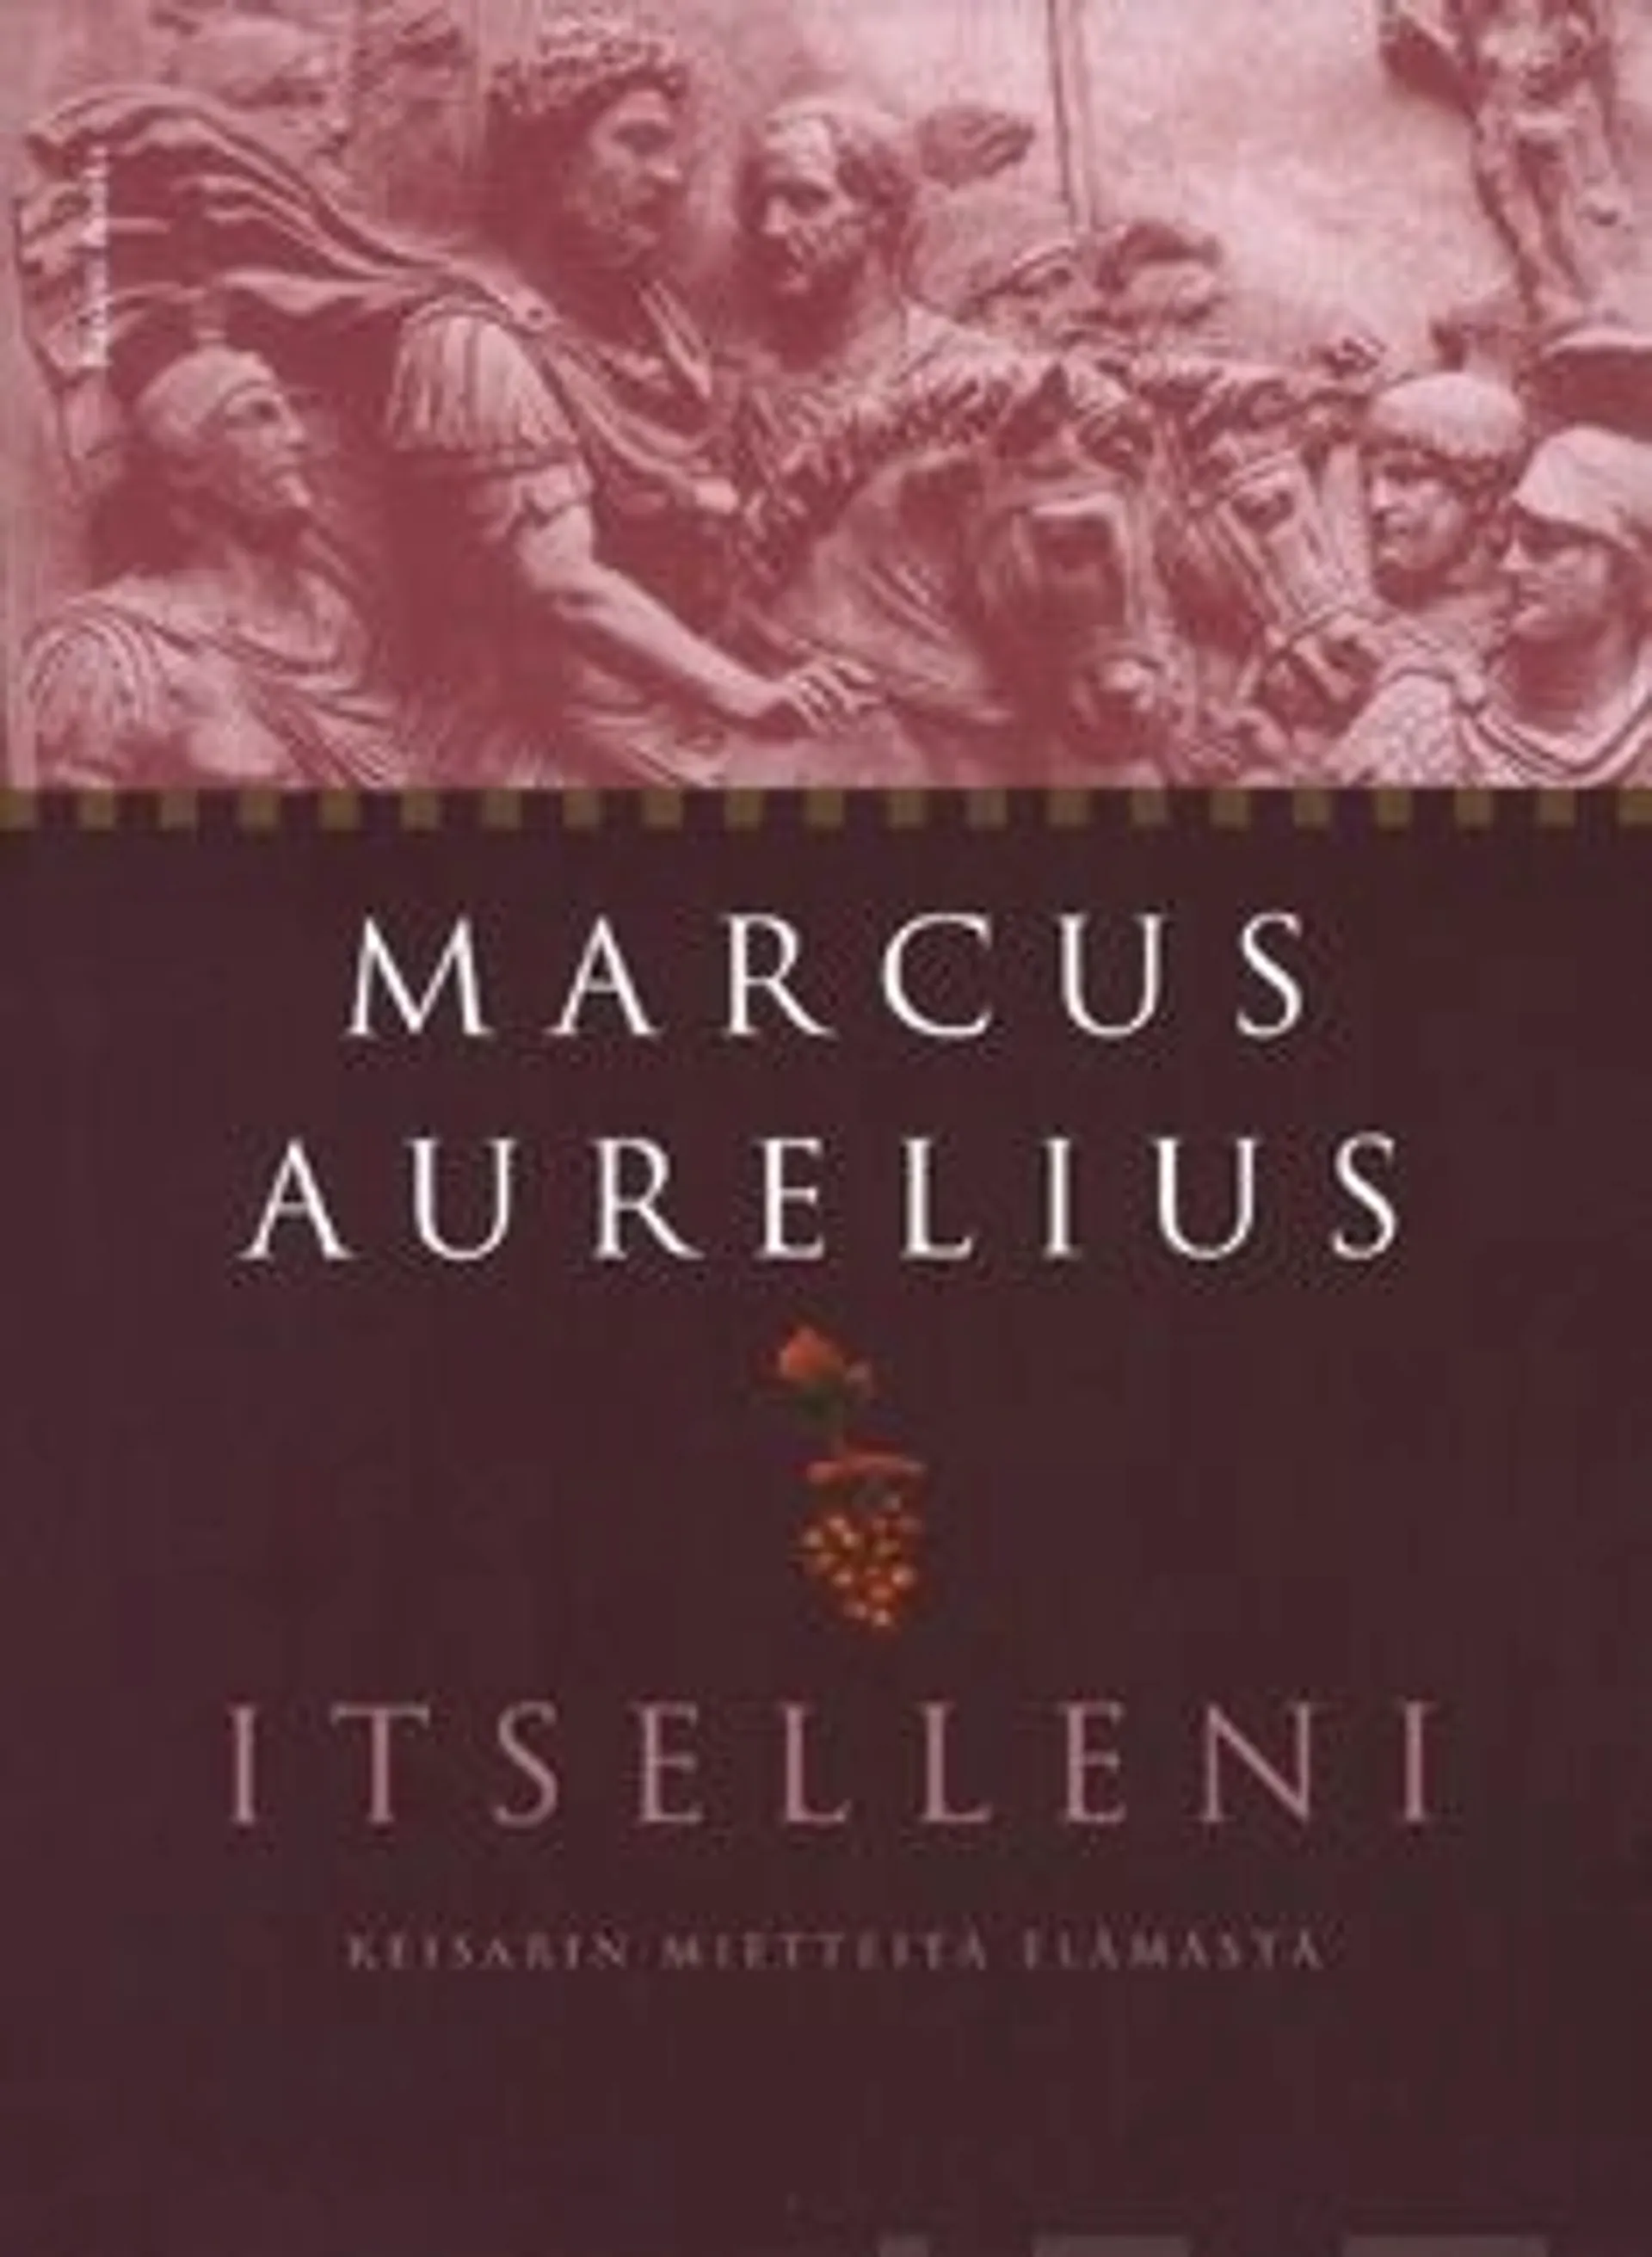 Aurelius, Itselleni - Keisarin mietteitä elämästä